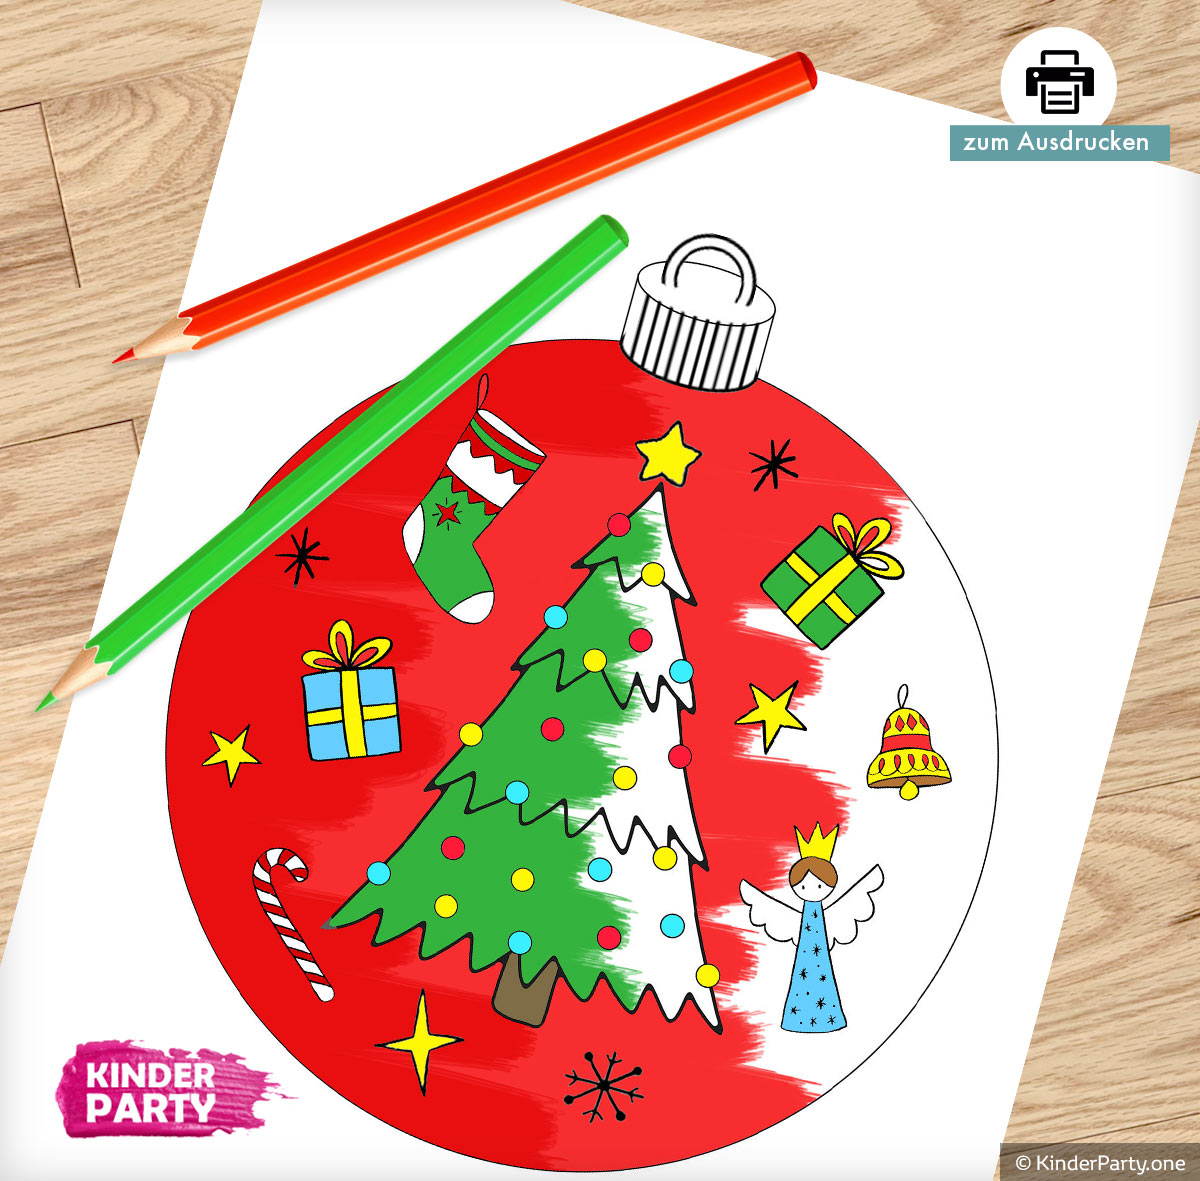 Weihnachtskugel mit Tannenbaum und anderen Feiertagsattributen zum Ausdrucken und Ausmalen für Kinder.